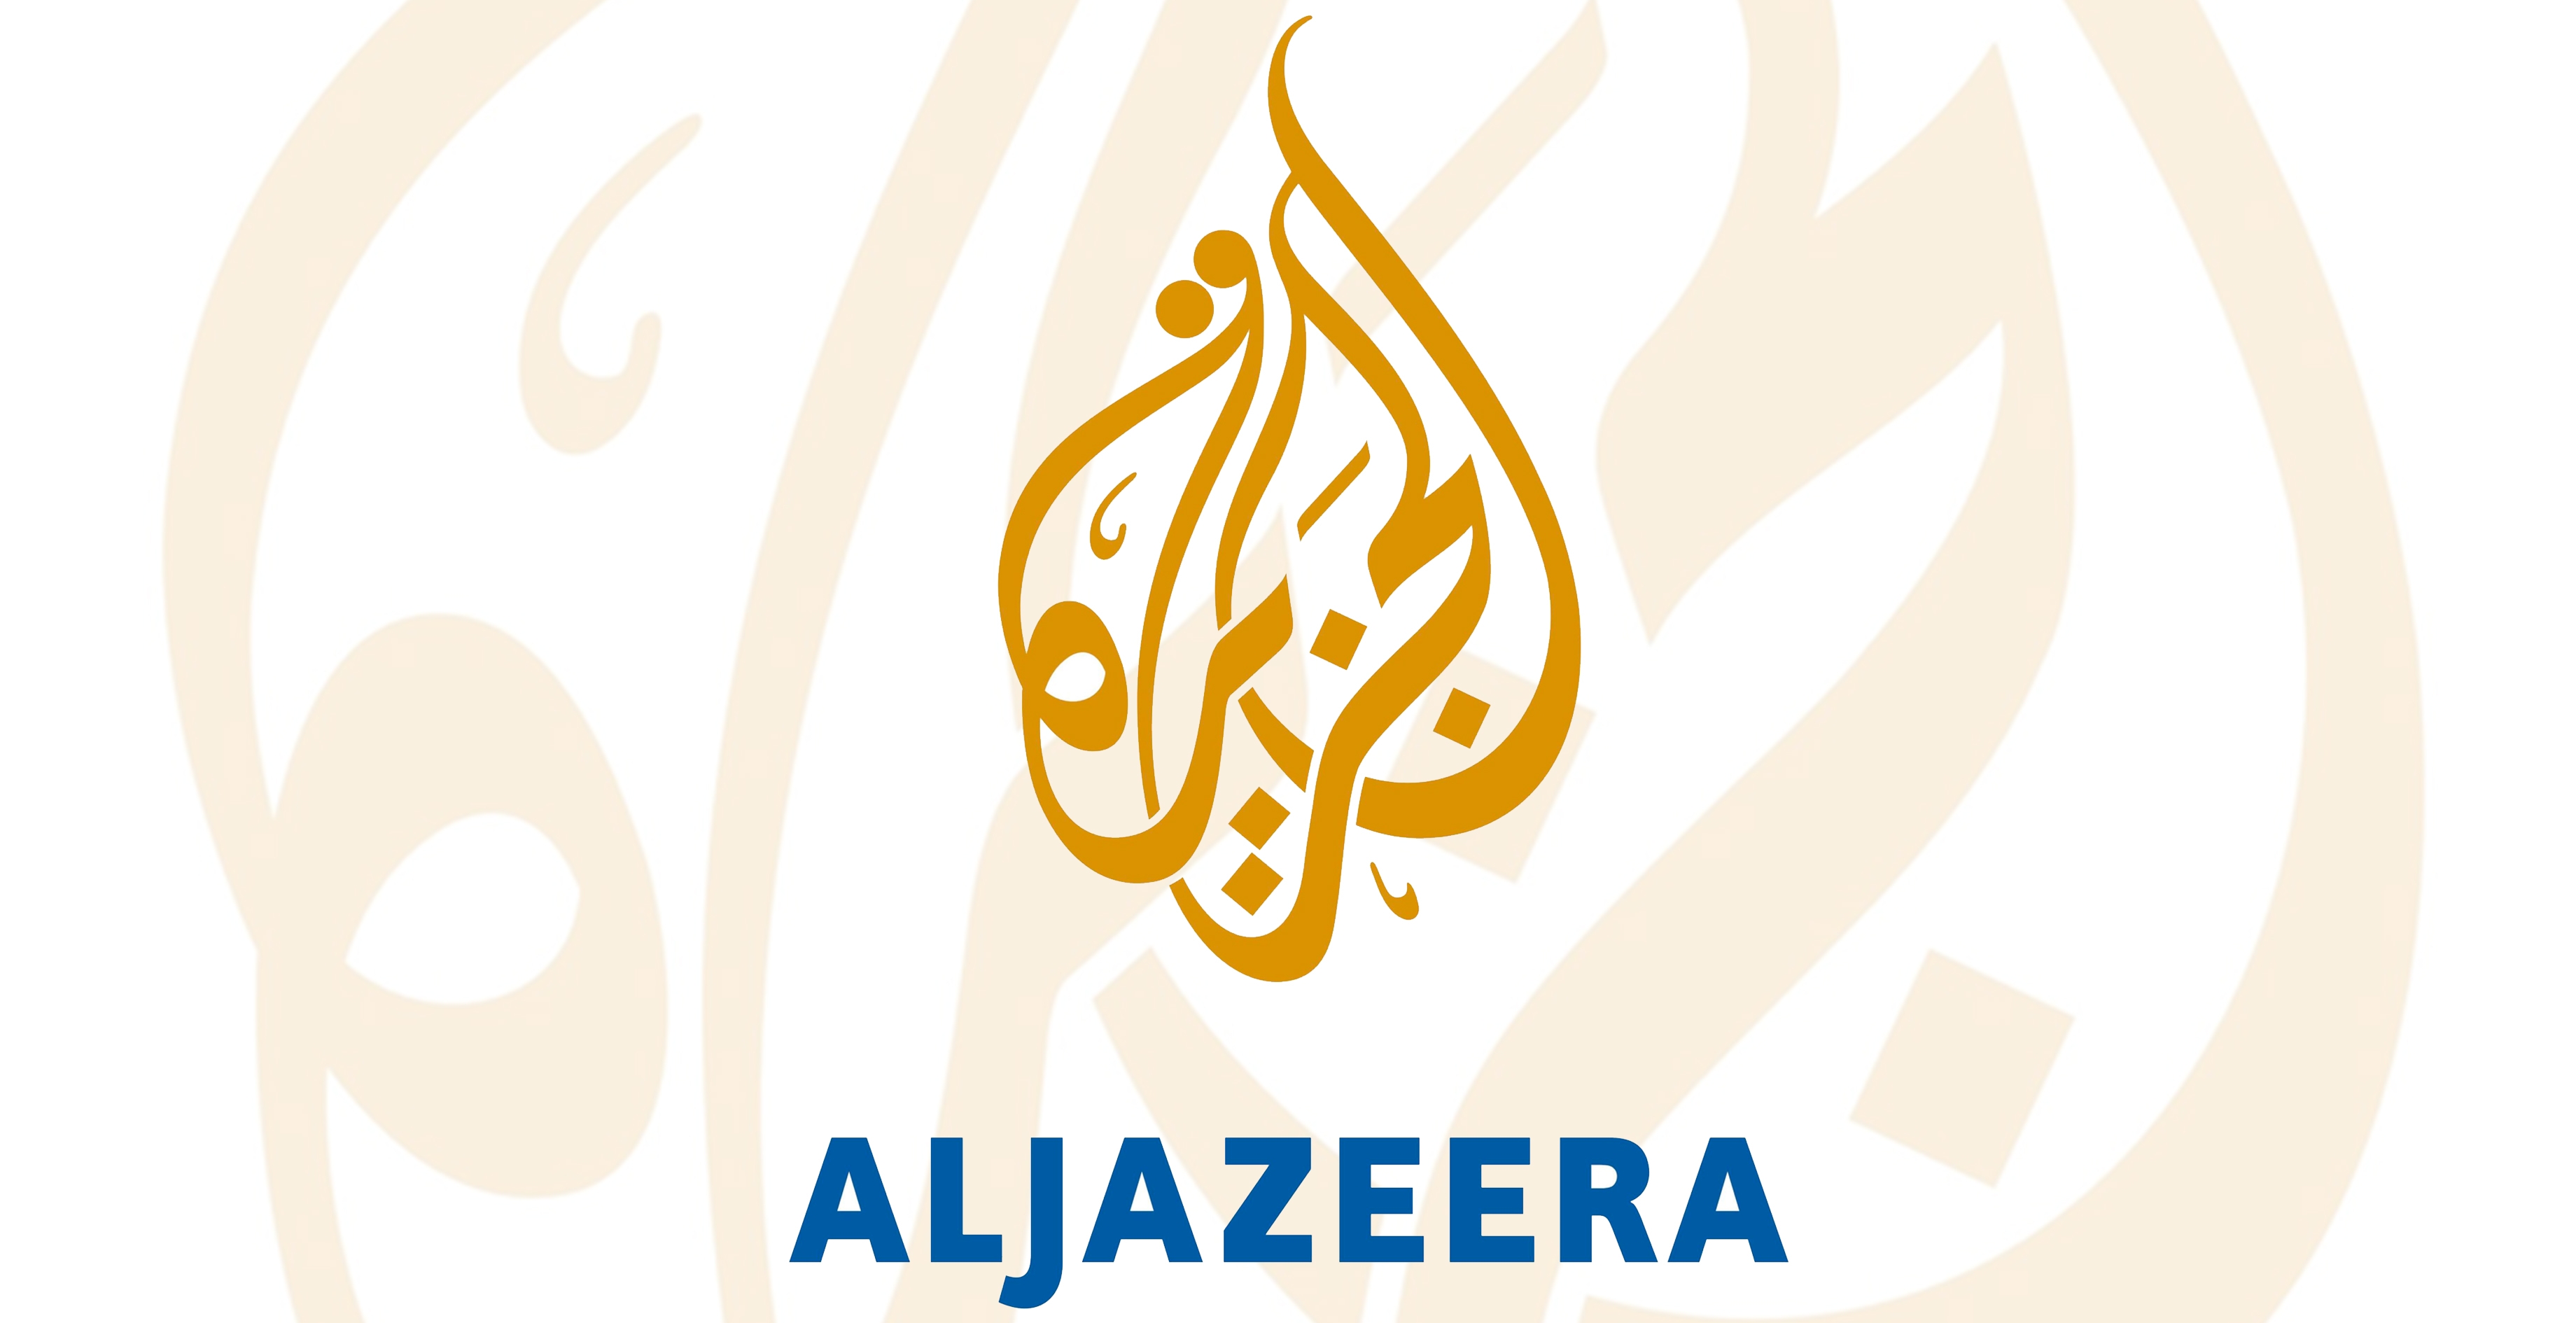 Regarder Aljazeera en replay sur ordinateur et sur smartphone depuis internet: c'est gratuit et illimité